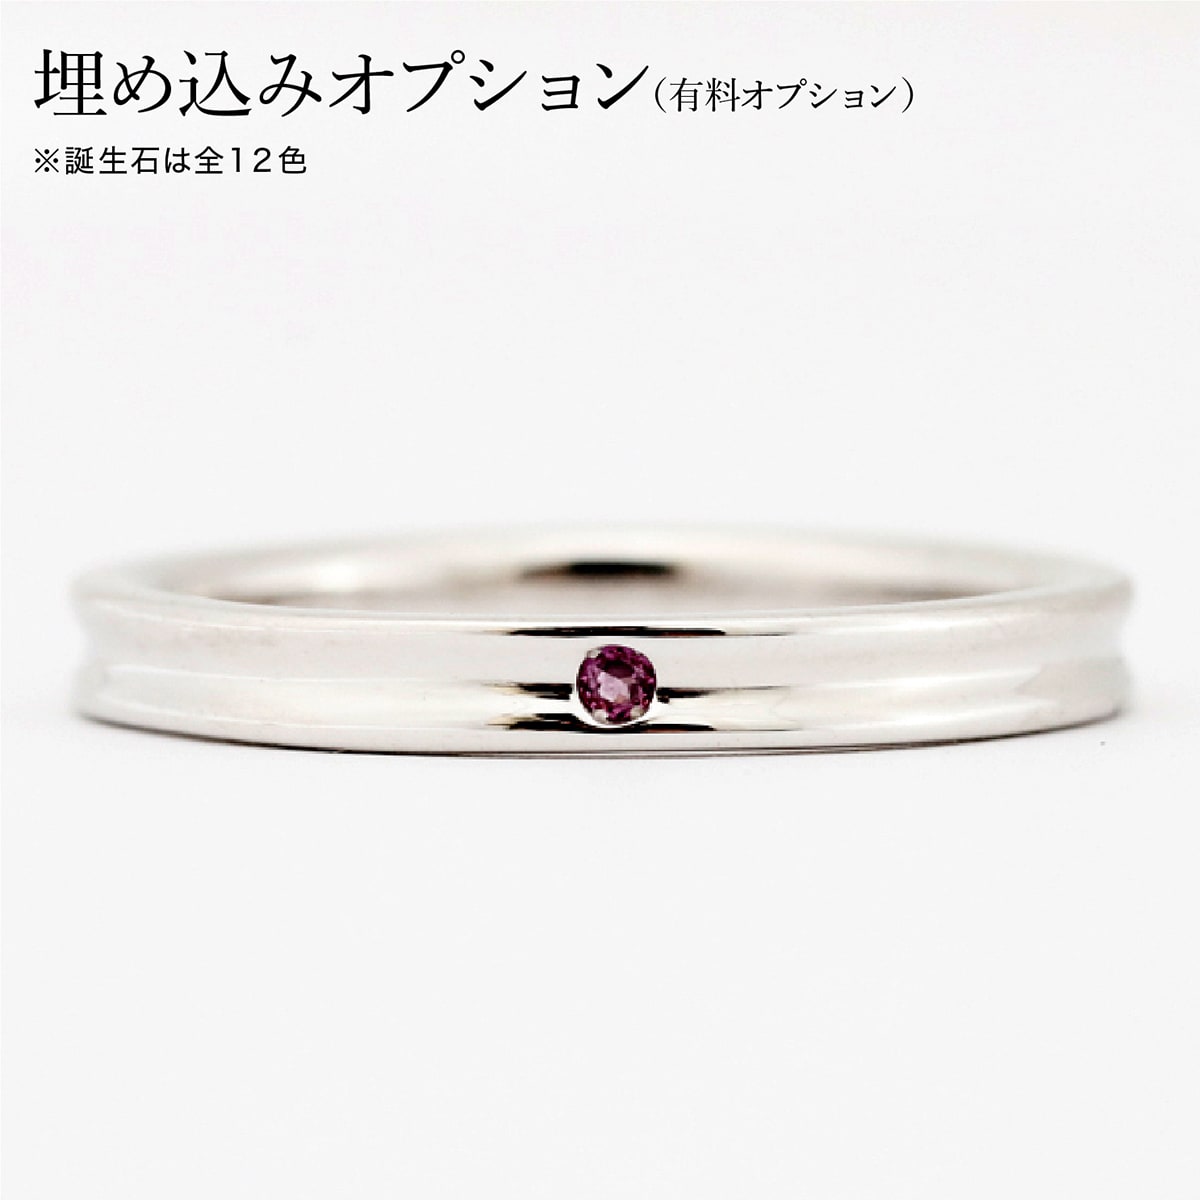 プラチナ ダイヤモンド ルビー 平甲丸 ドッツリングリング(指輪) - www ...